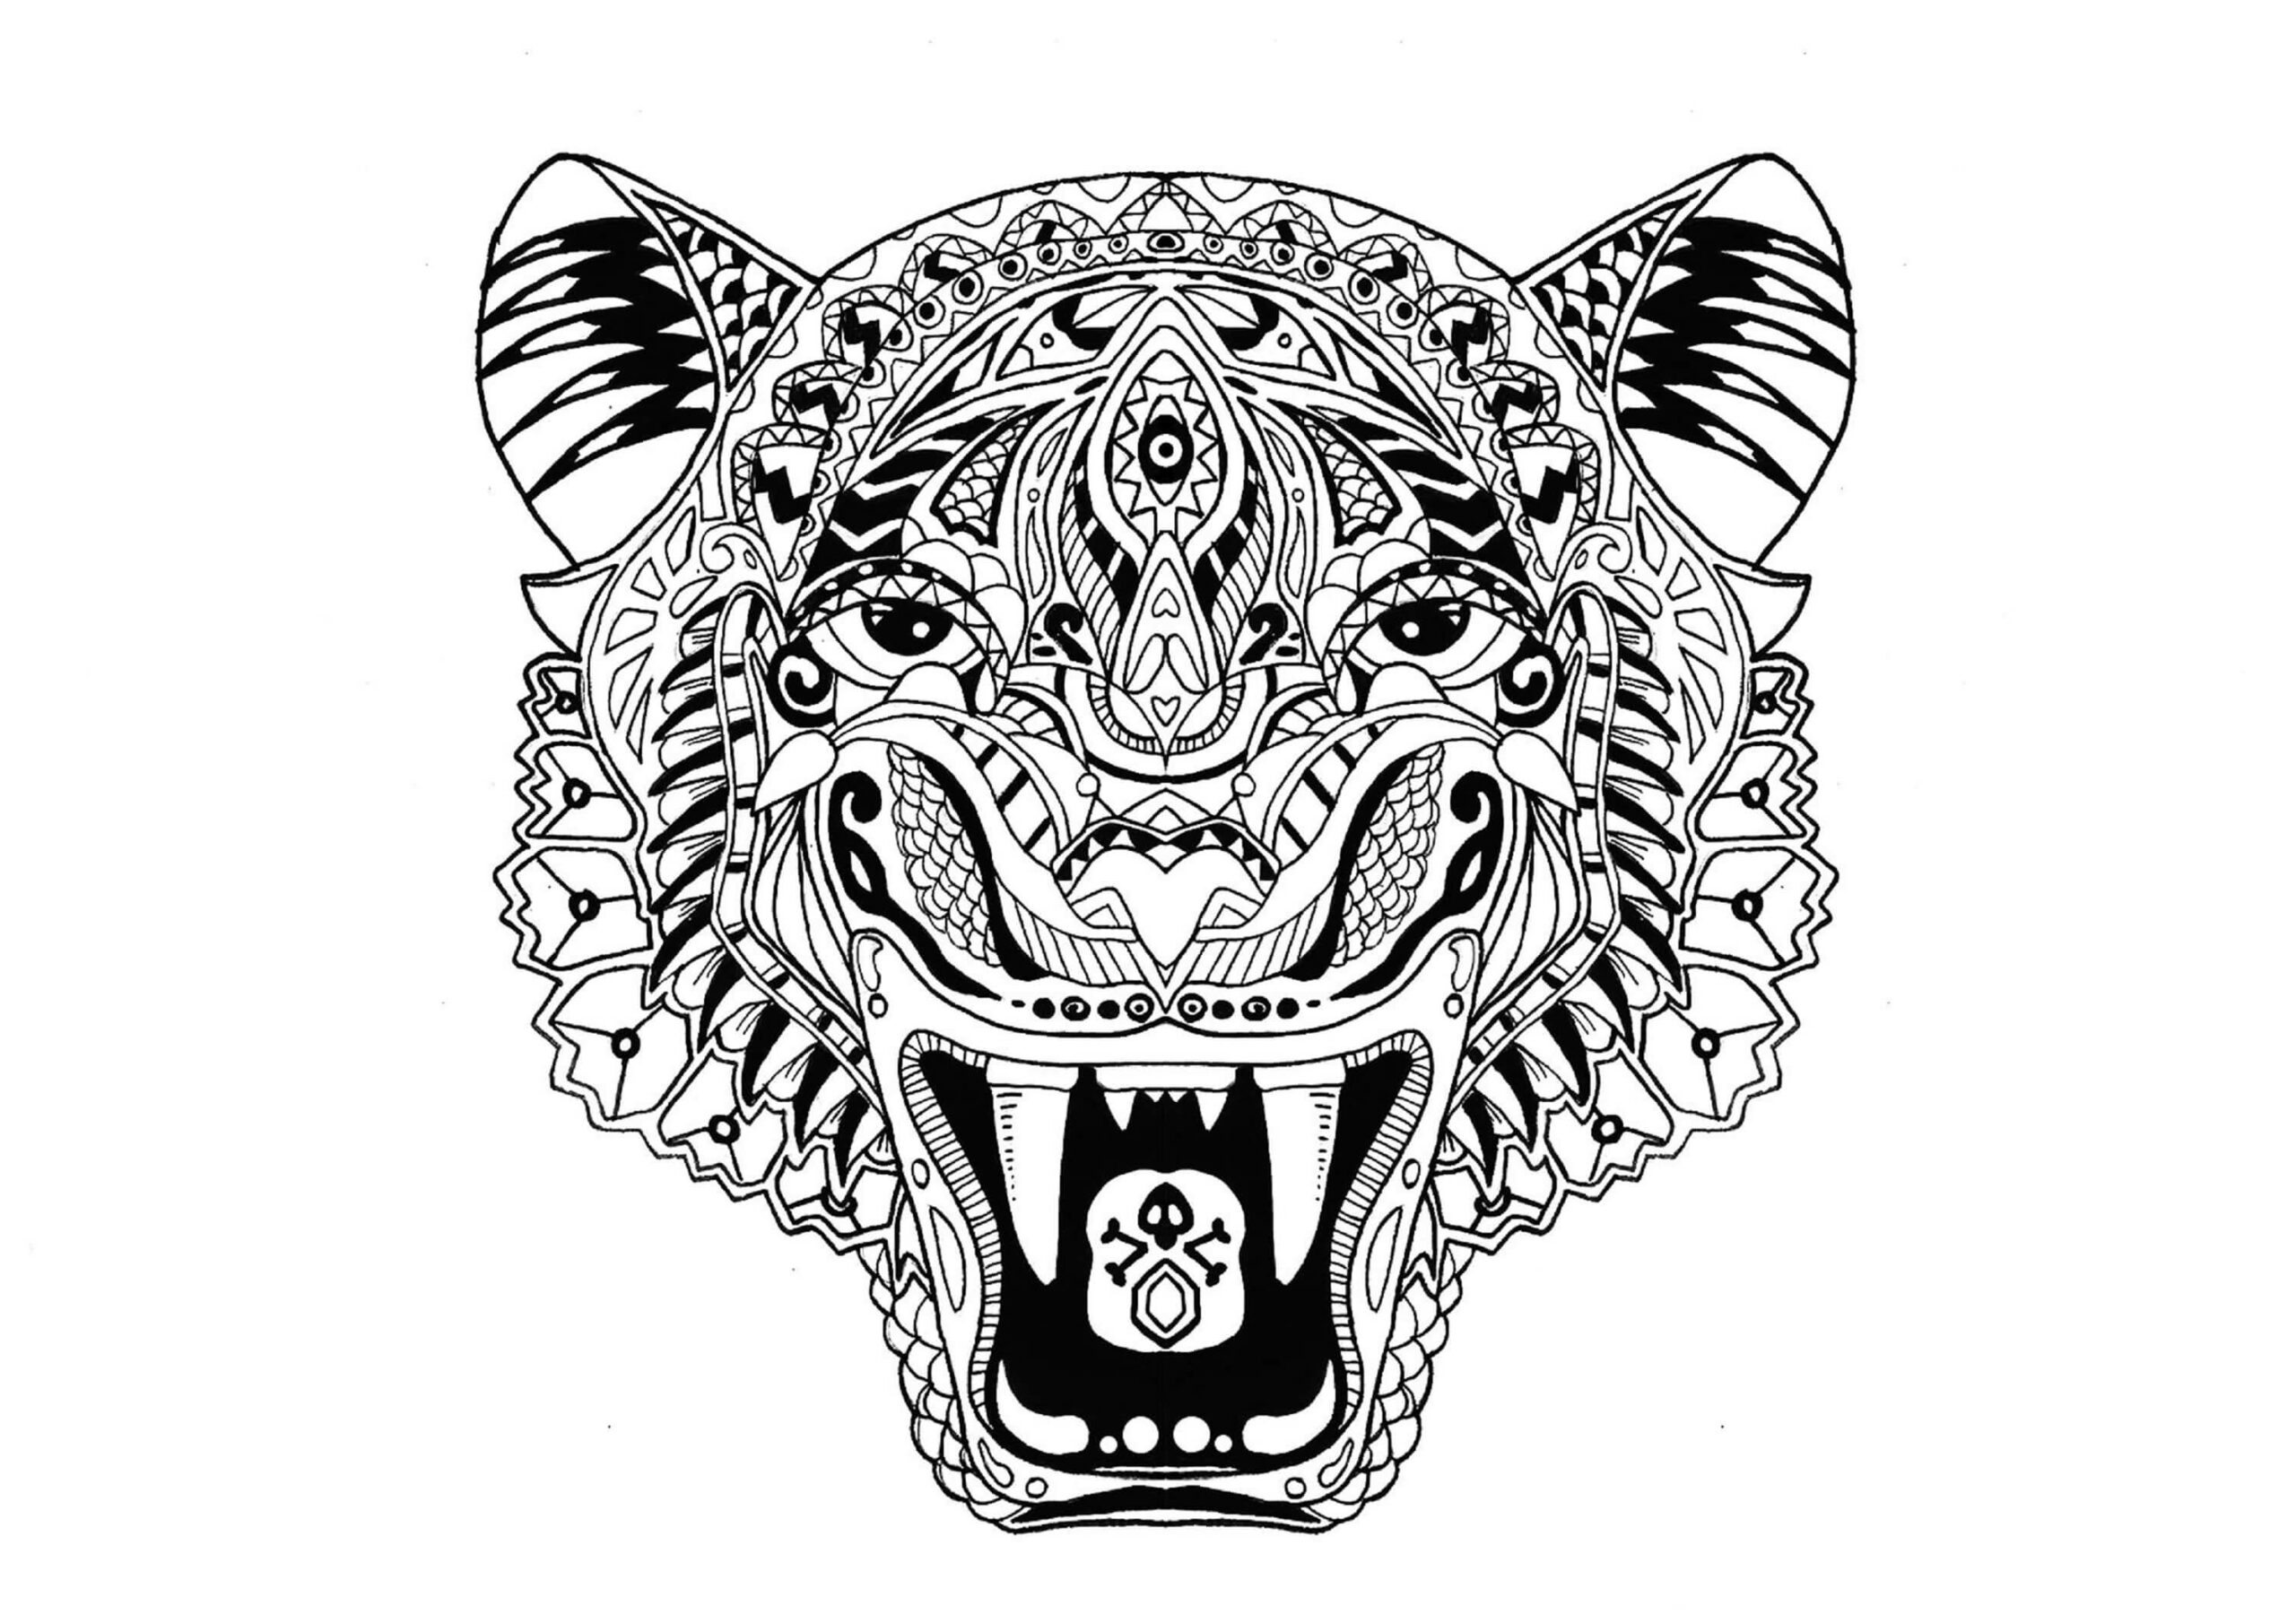 Mandala Tiger Coloring Page - Sheet 1 Mandalas